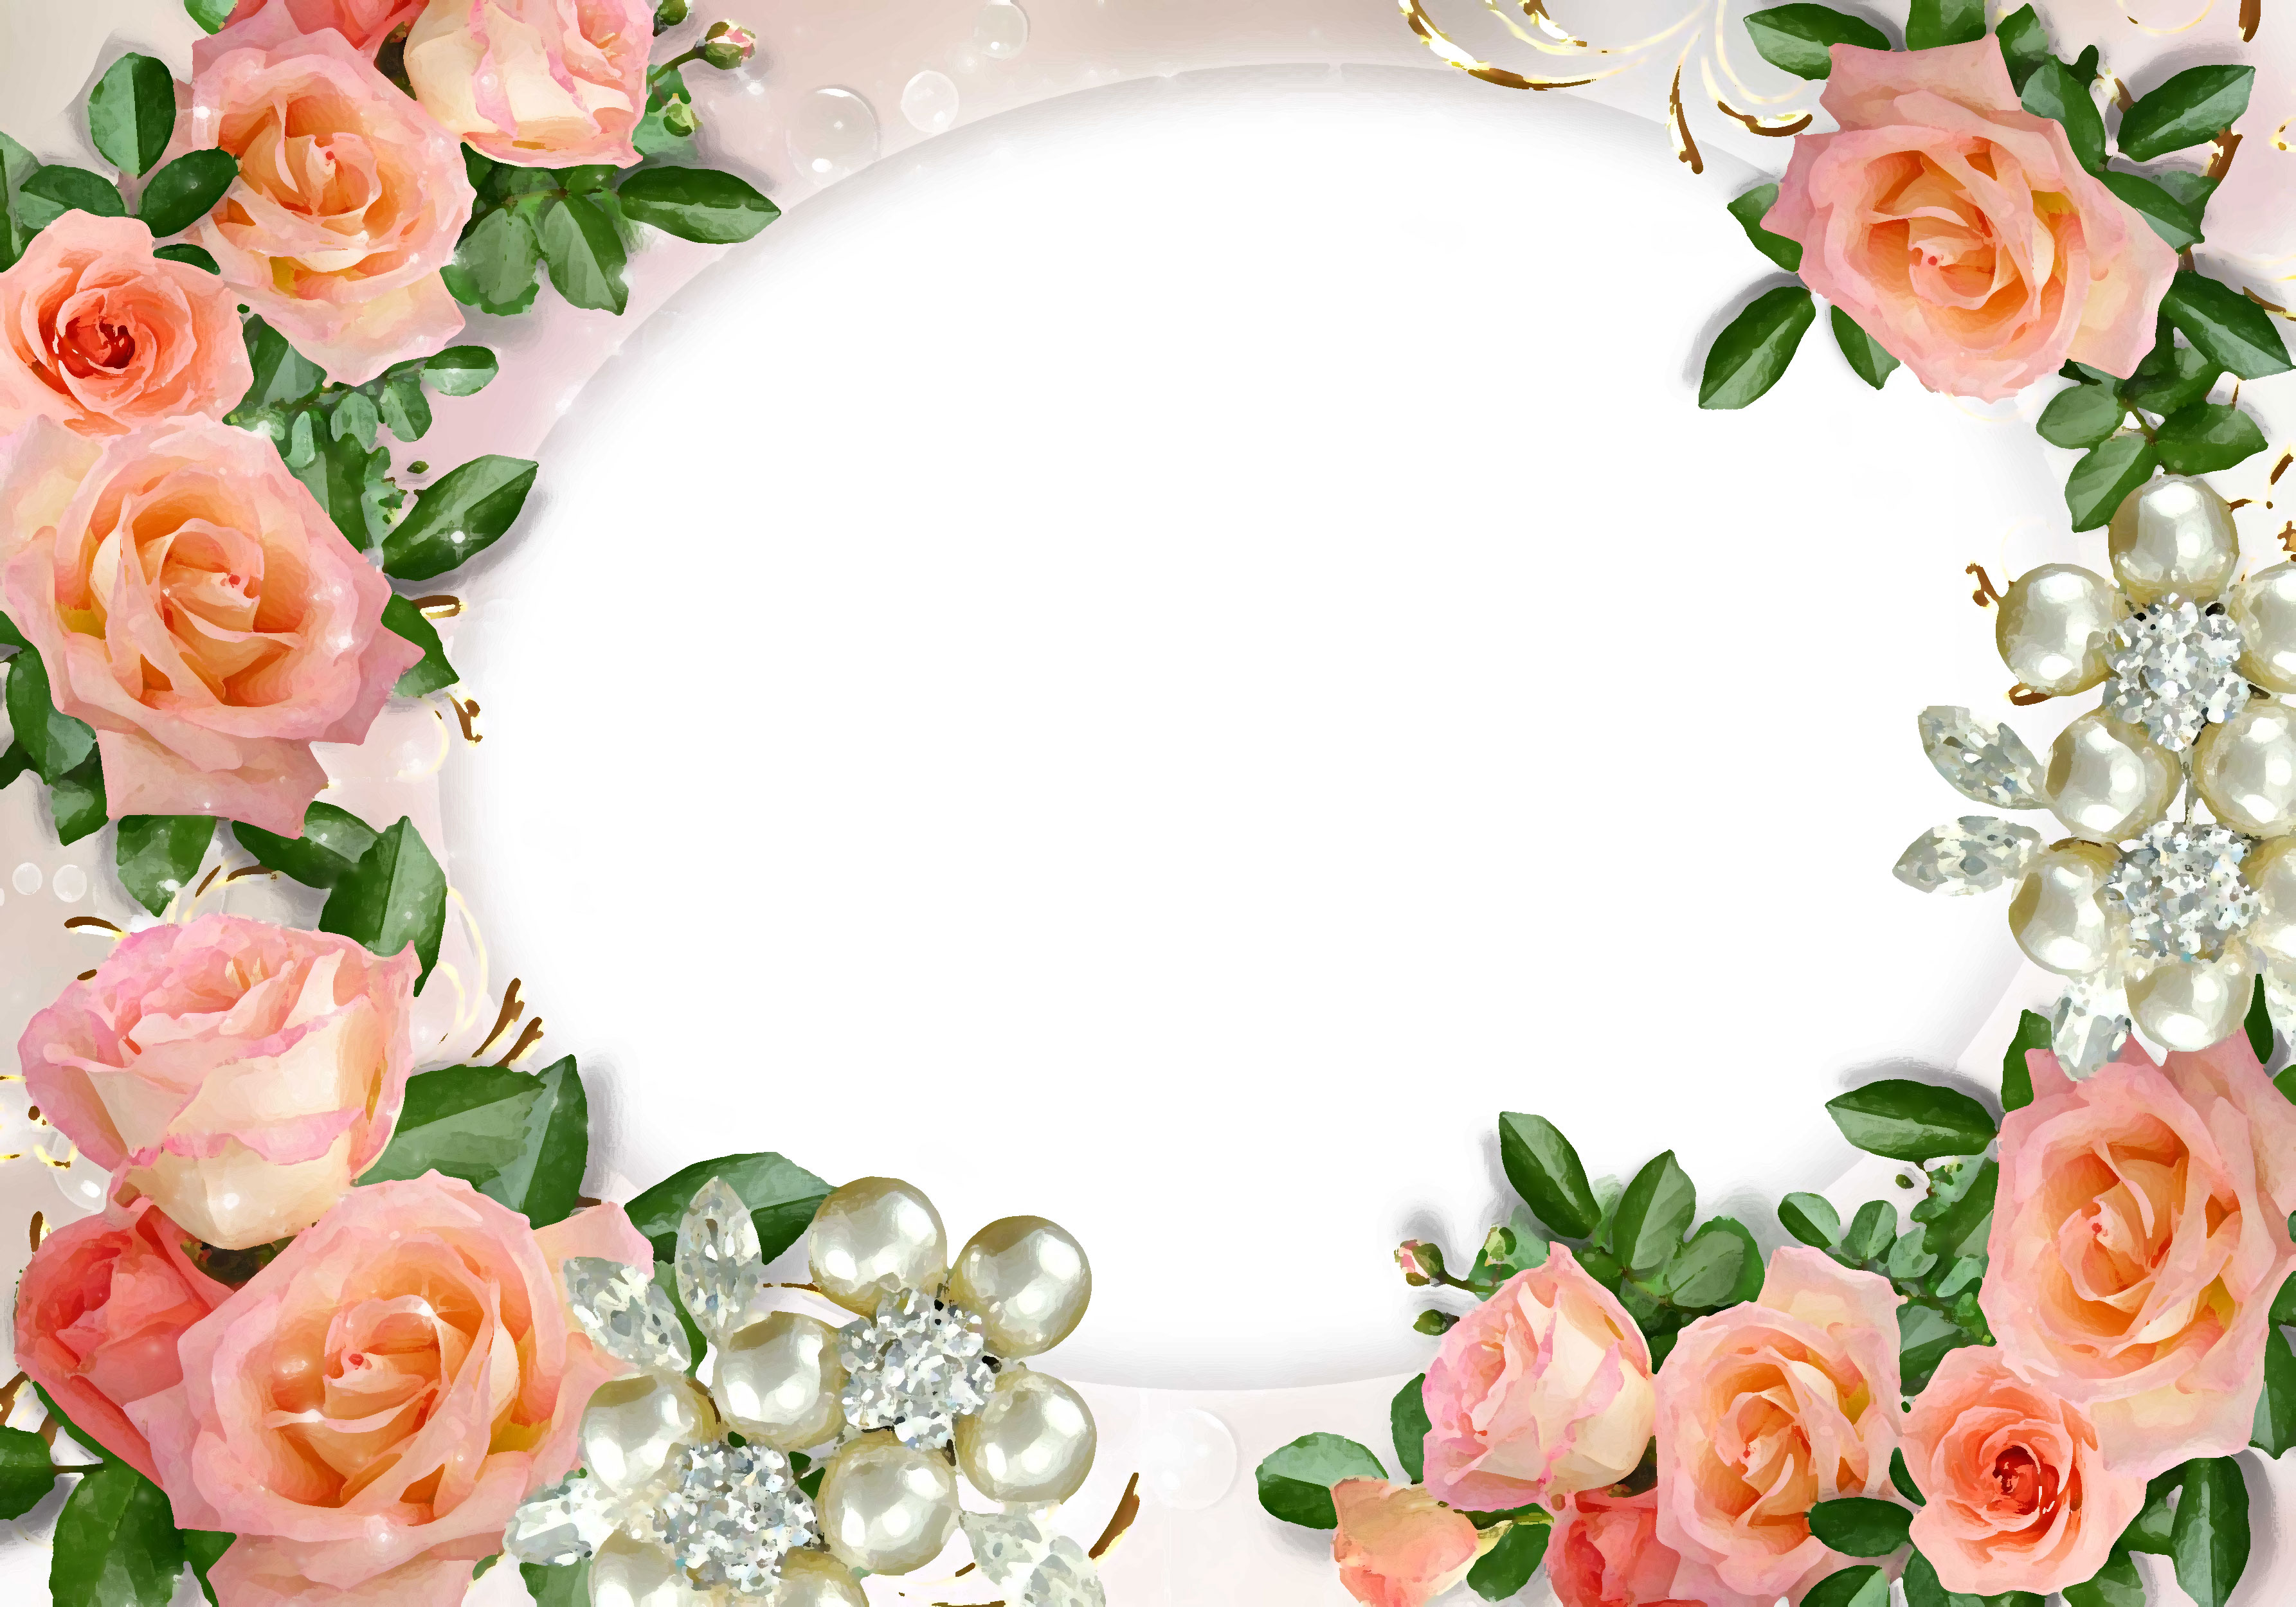 バラの画像 イラスト 壁紙 背景用 No 632 ピンクのバラ 真珠